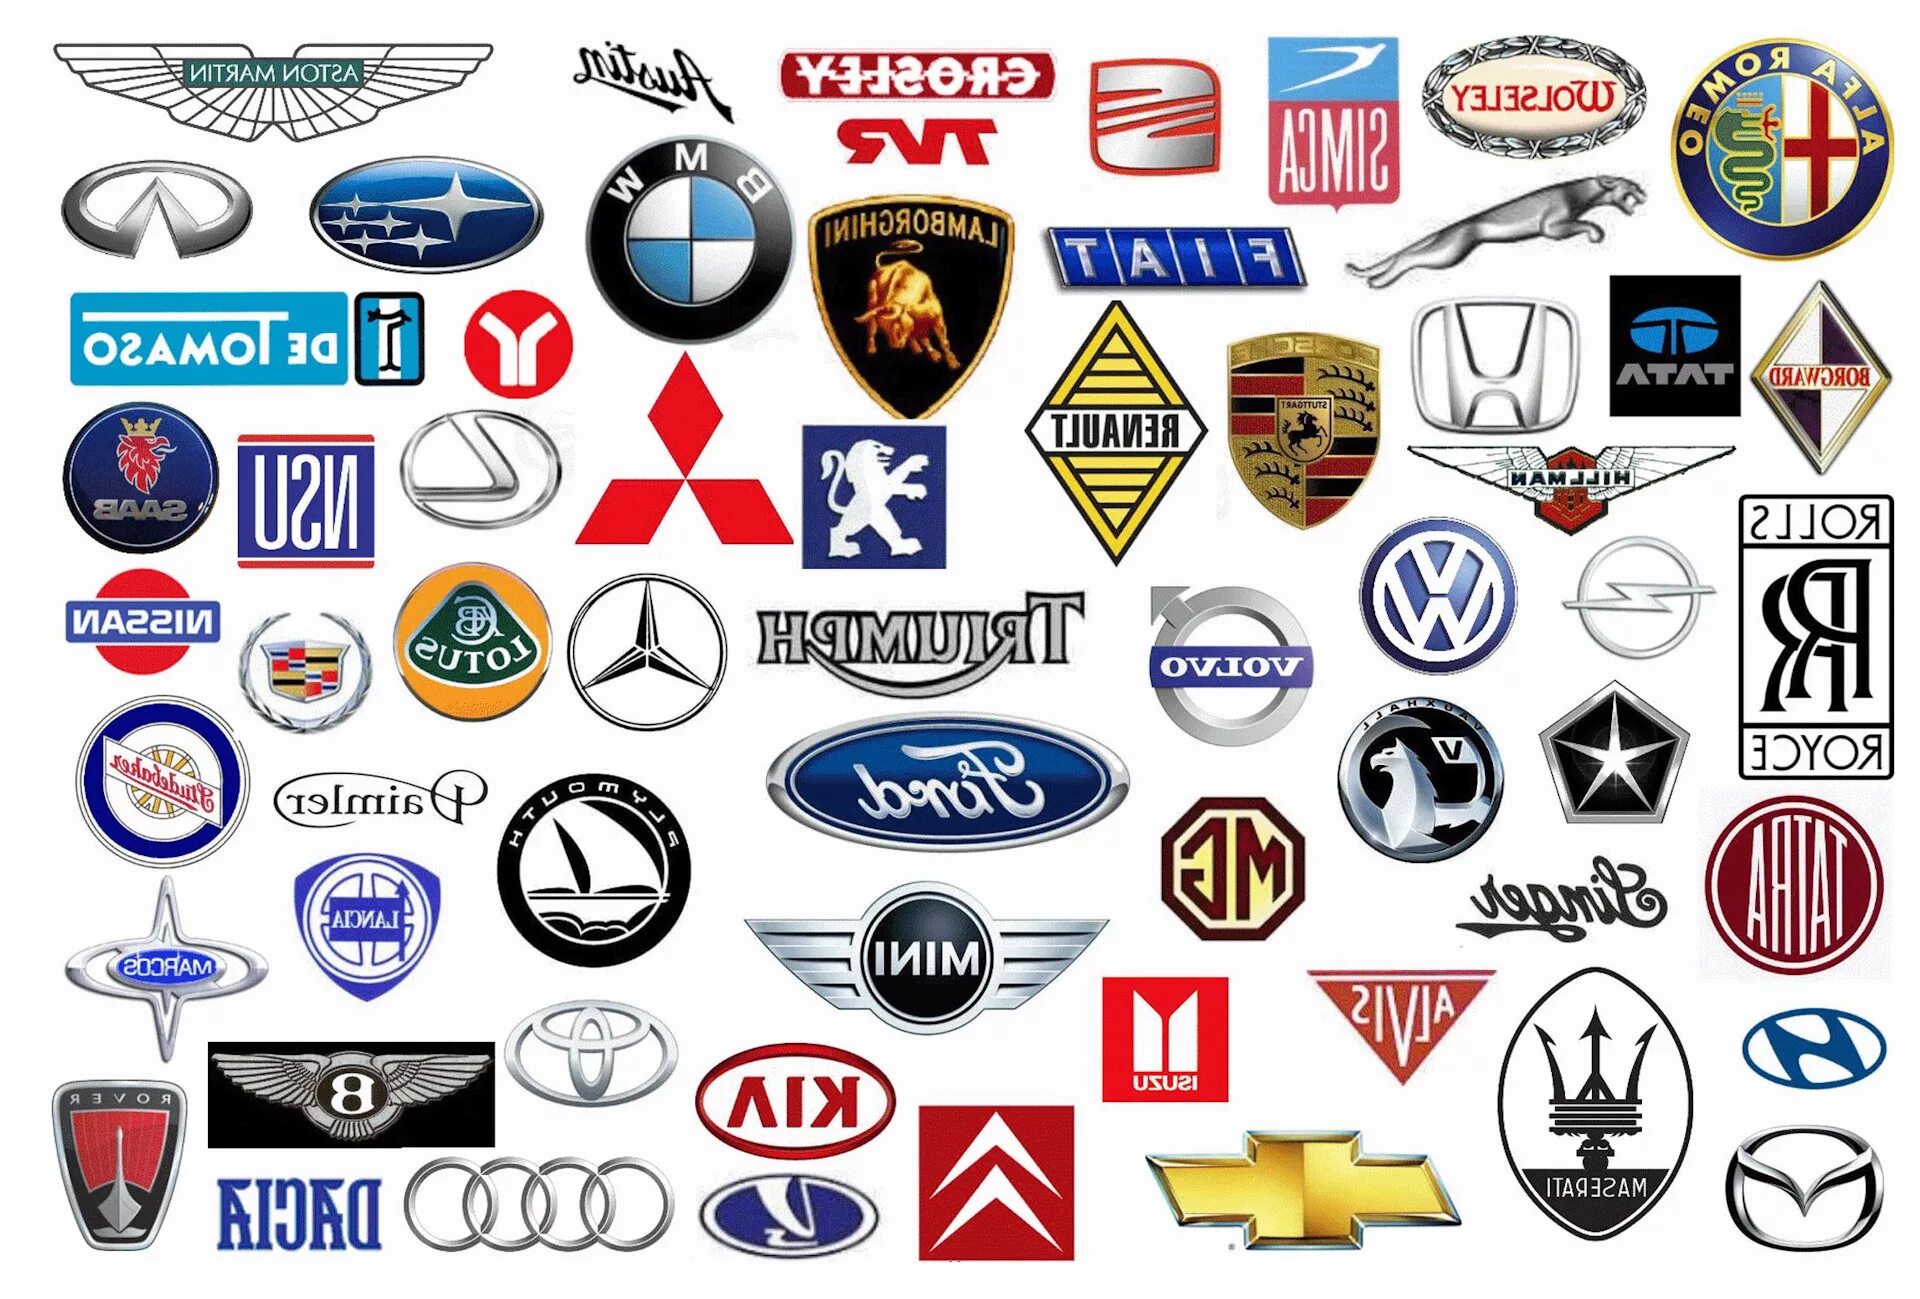 Фирмы производителей автомобилей. Марки автомобилей. Значки автомобилей. Марки автомобилей со значками. Амарок авто.